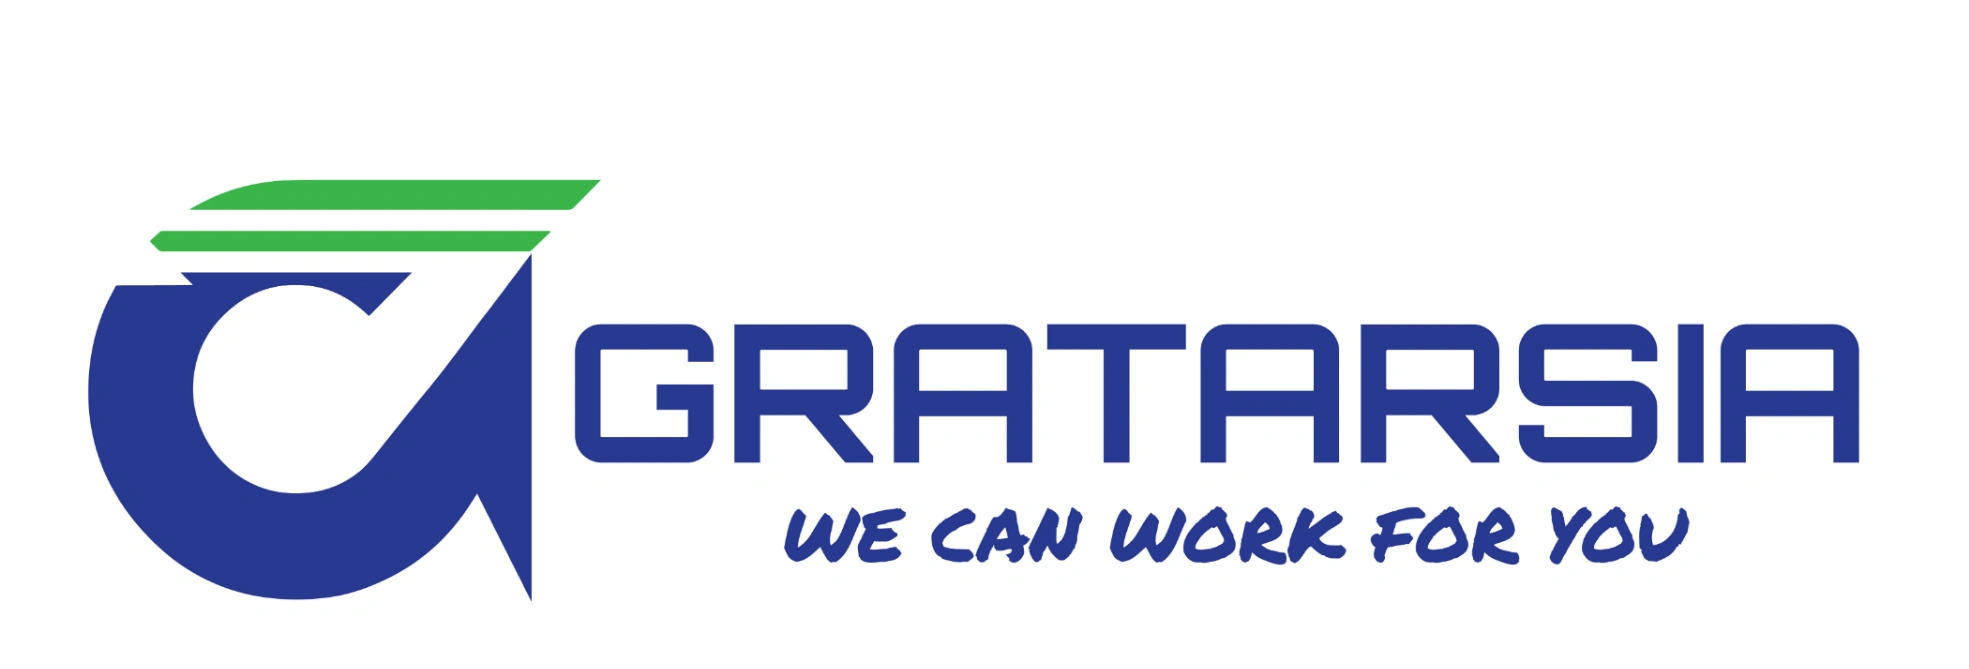 Gratarsia - Multimedia Kreatif Bekasi